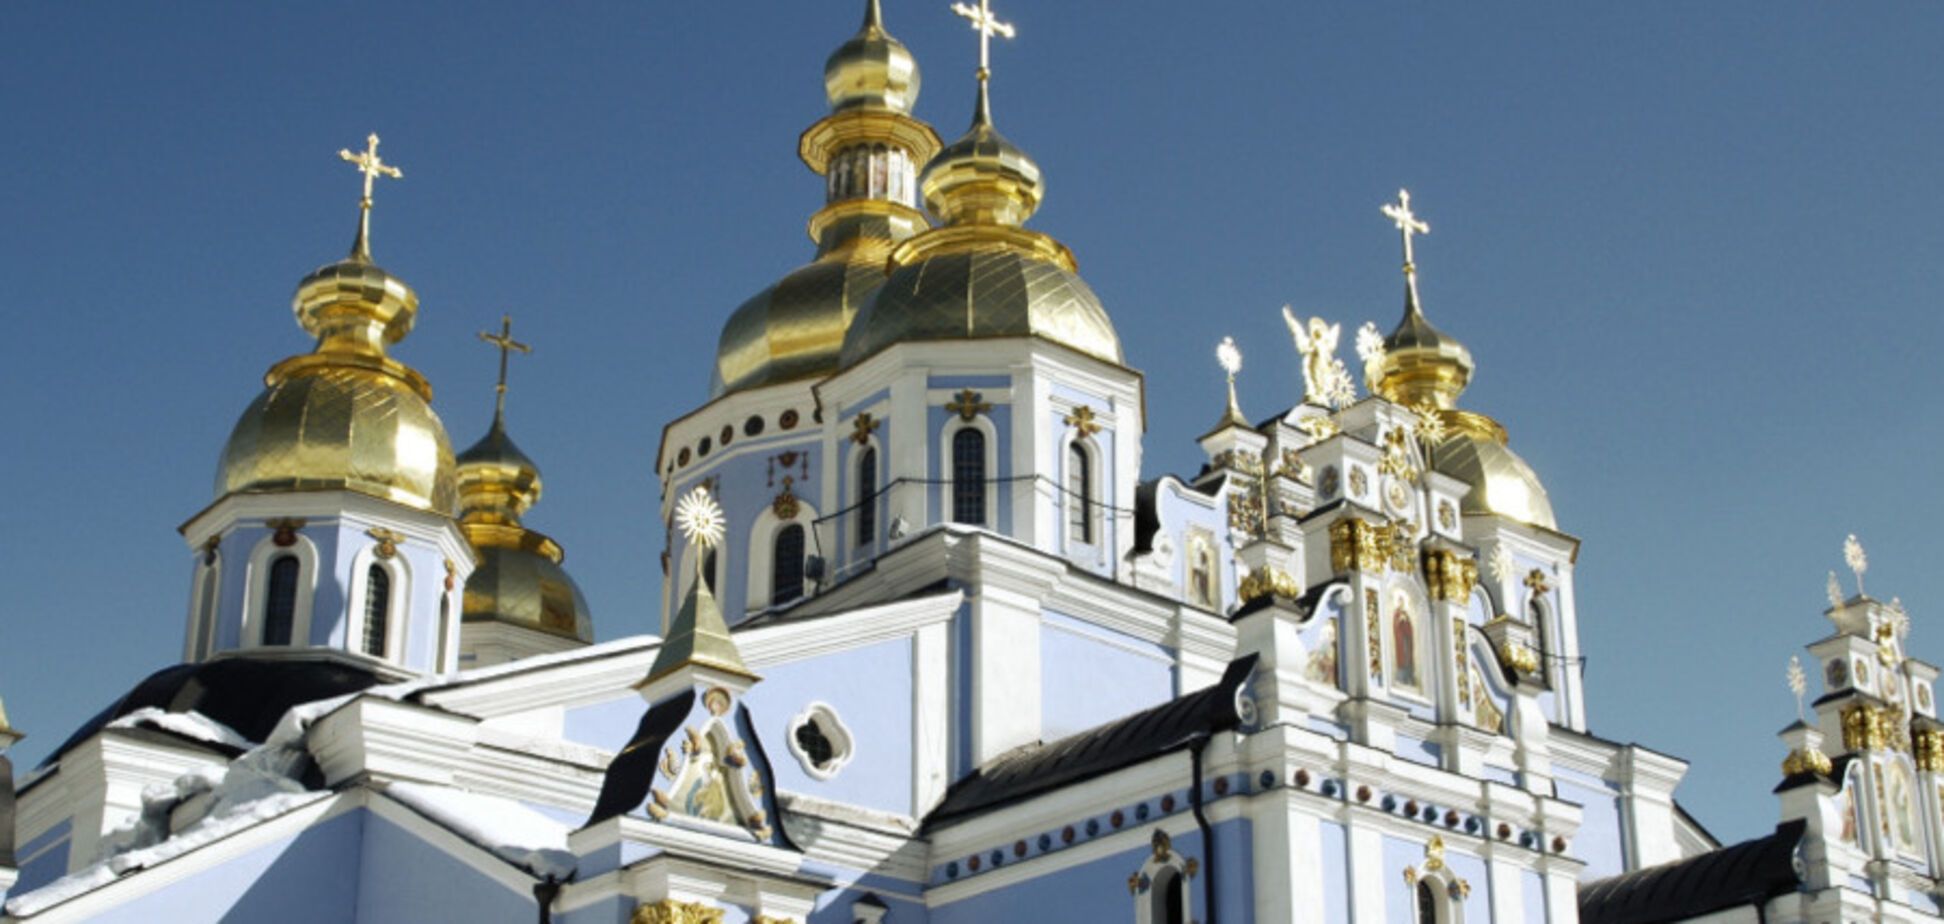 Єдина церква в Україні: стало відомо про підлість ФСБ на Донбасі